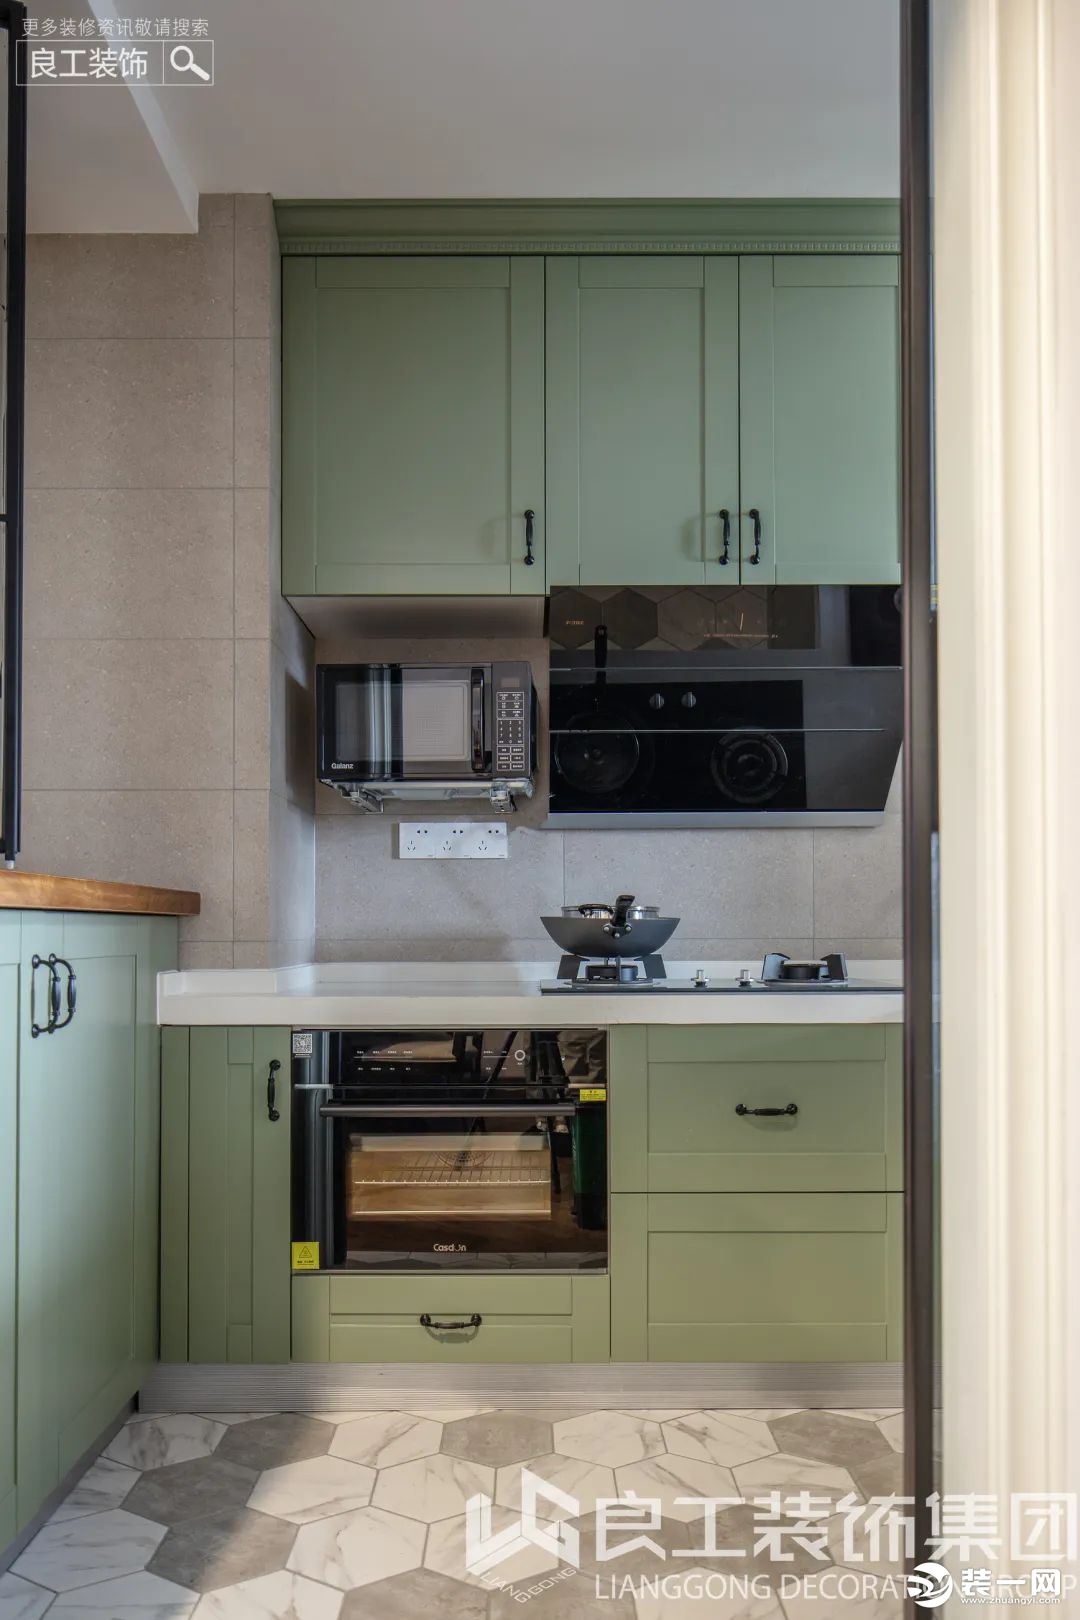 厨房将主空间的那抹浅绿色引入，流淌着一抹灵动清新的艺术韵味，让烹饪的心情随之愉悦。